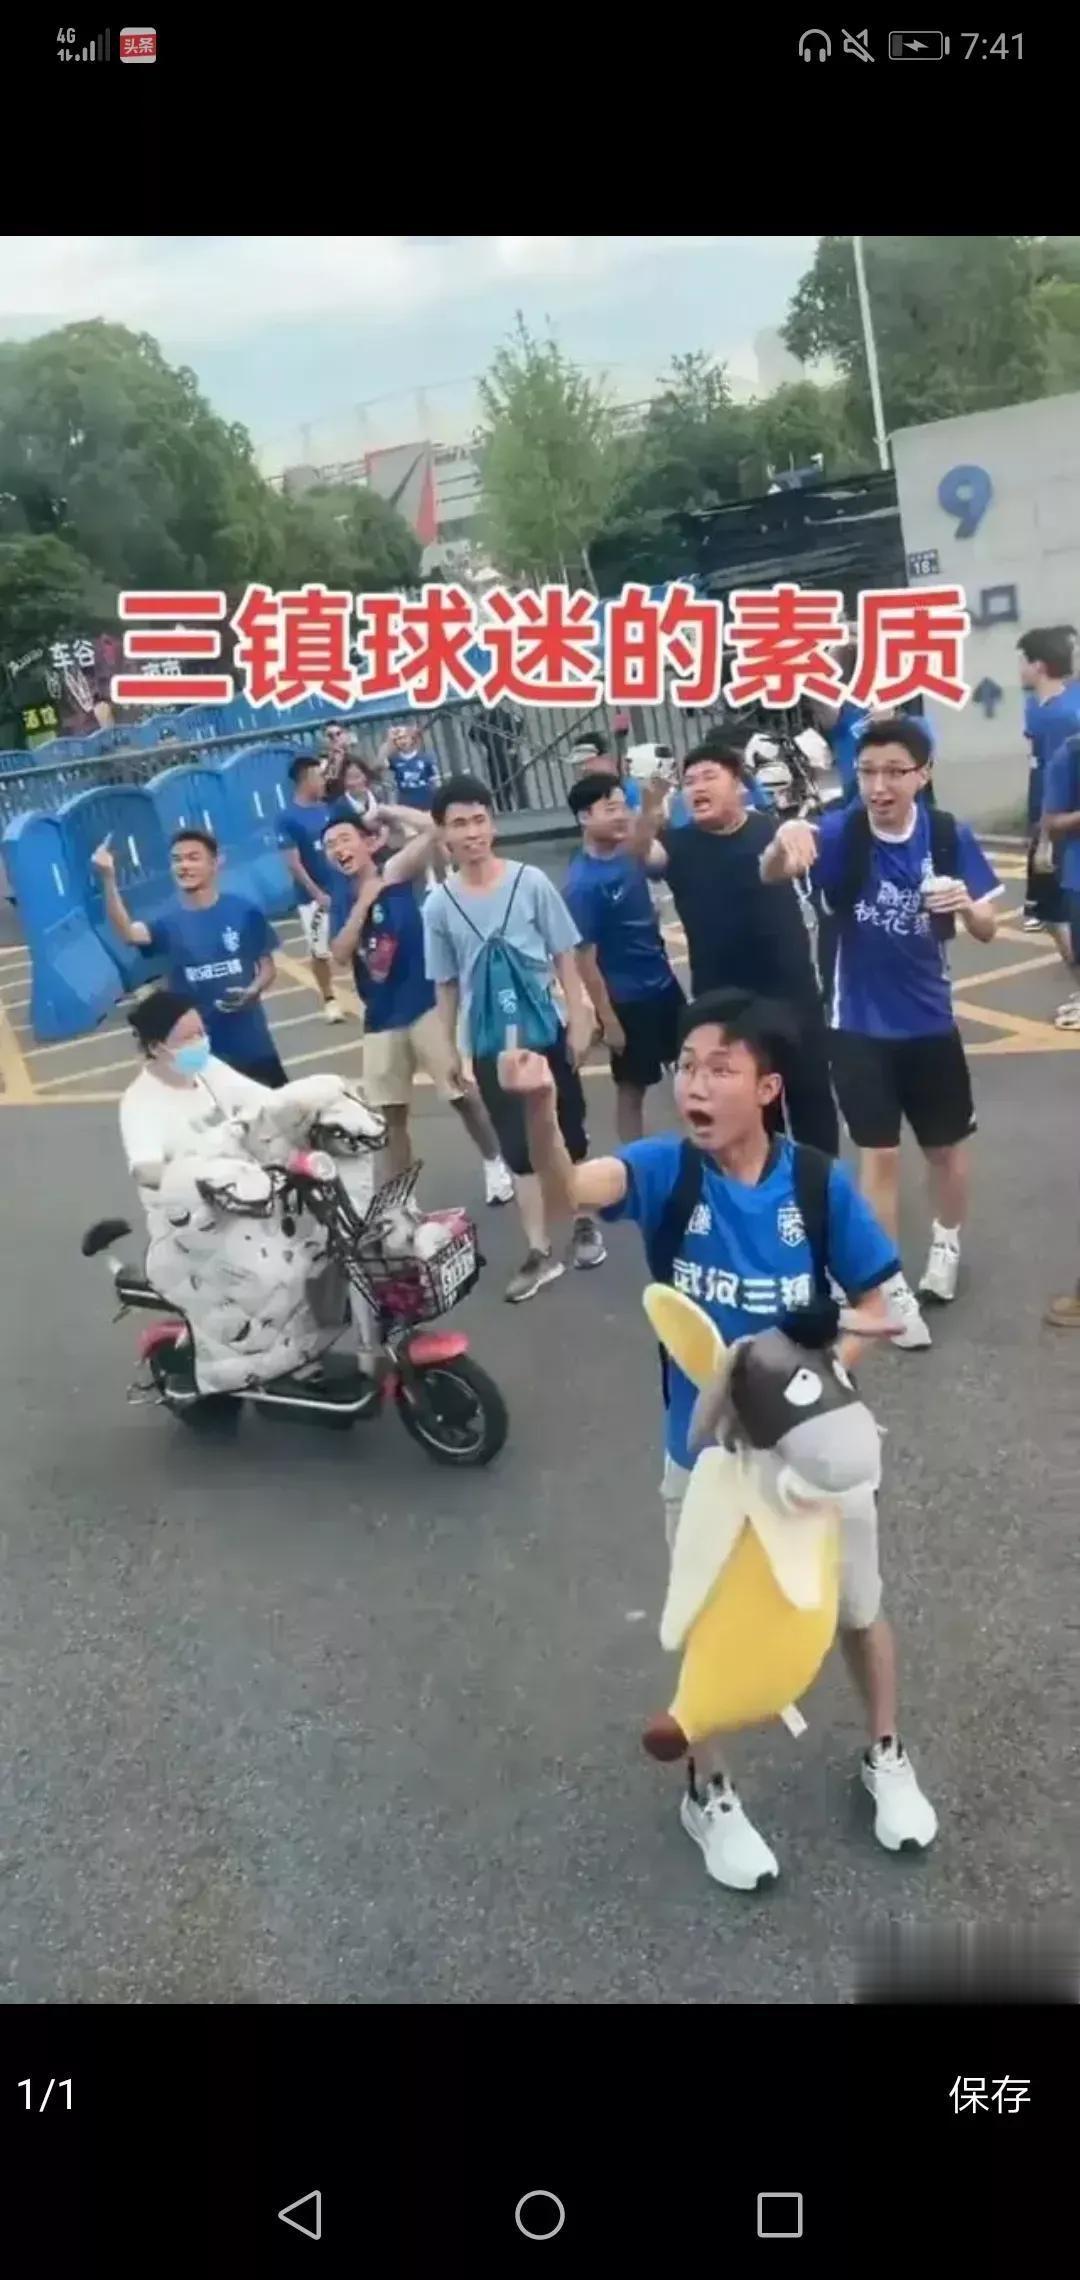 现在看来，事情应该是武汉三镇球迷先闹起来的，毕竟三镇球迷曾经围攻过泰山队的大巴车(2)